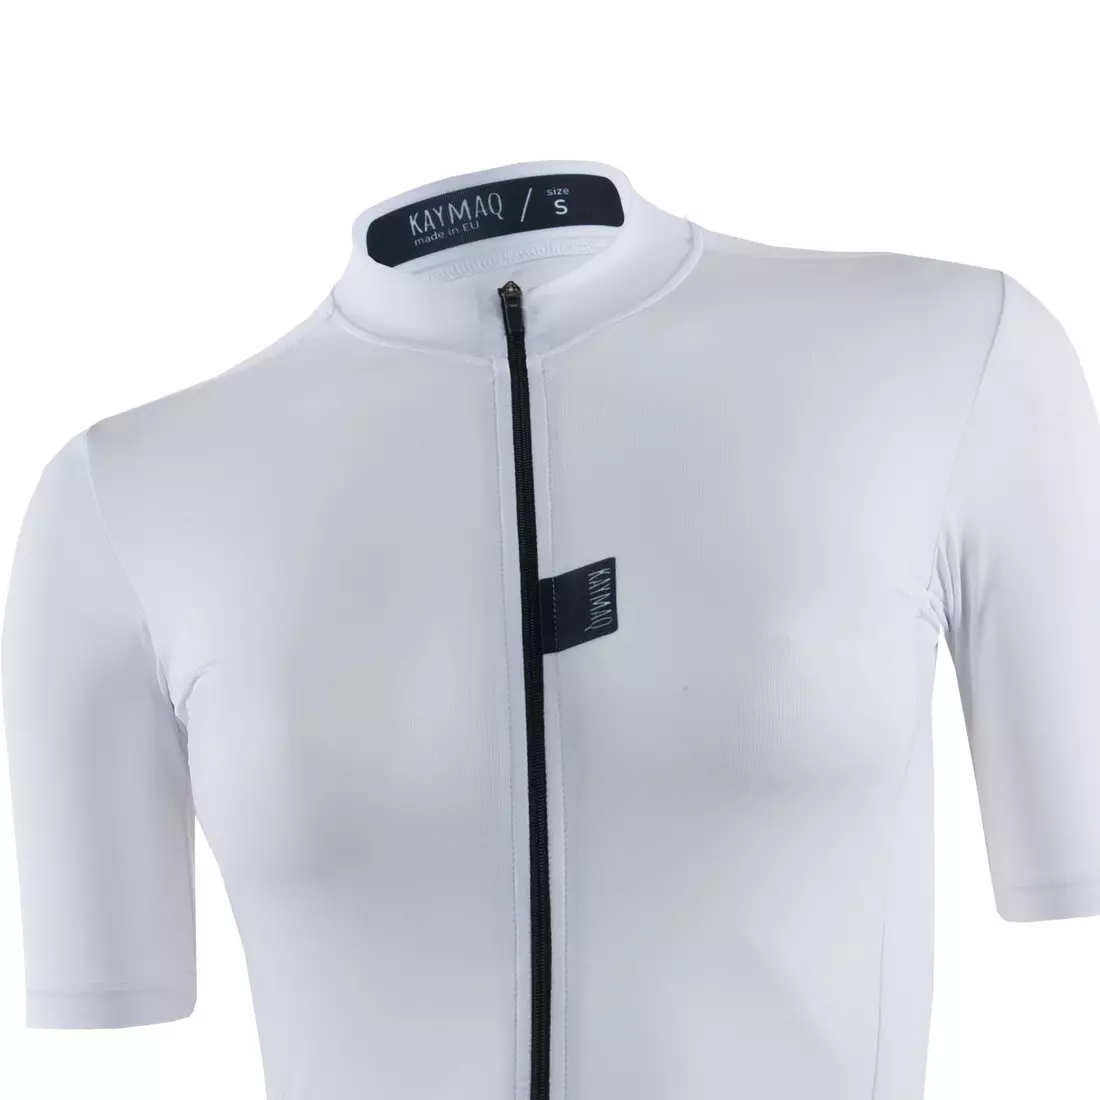 KAYMAQ dámsky cyklistické tričko s krátkym rukávom biela KYQ-SS-2001-1